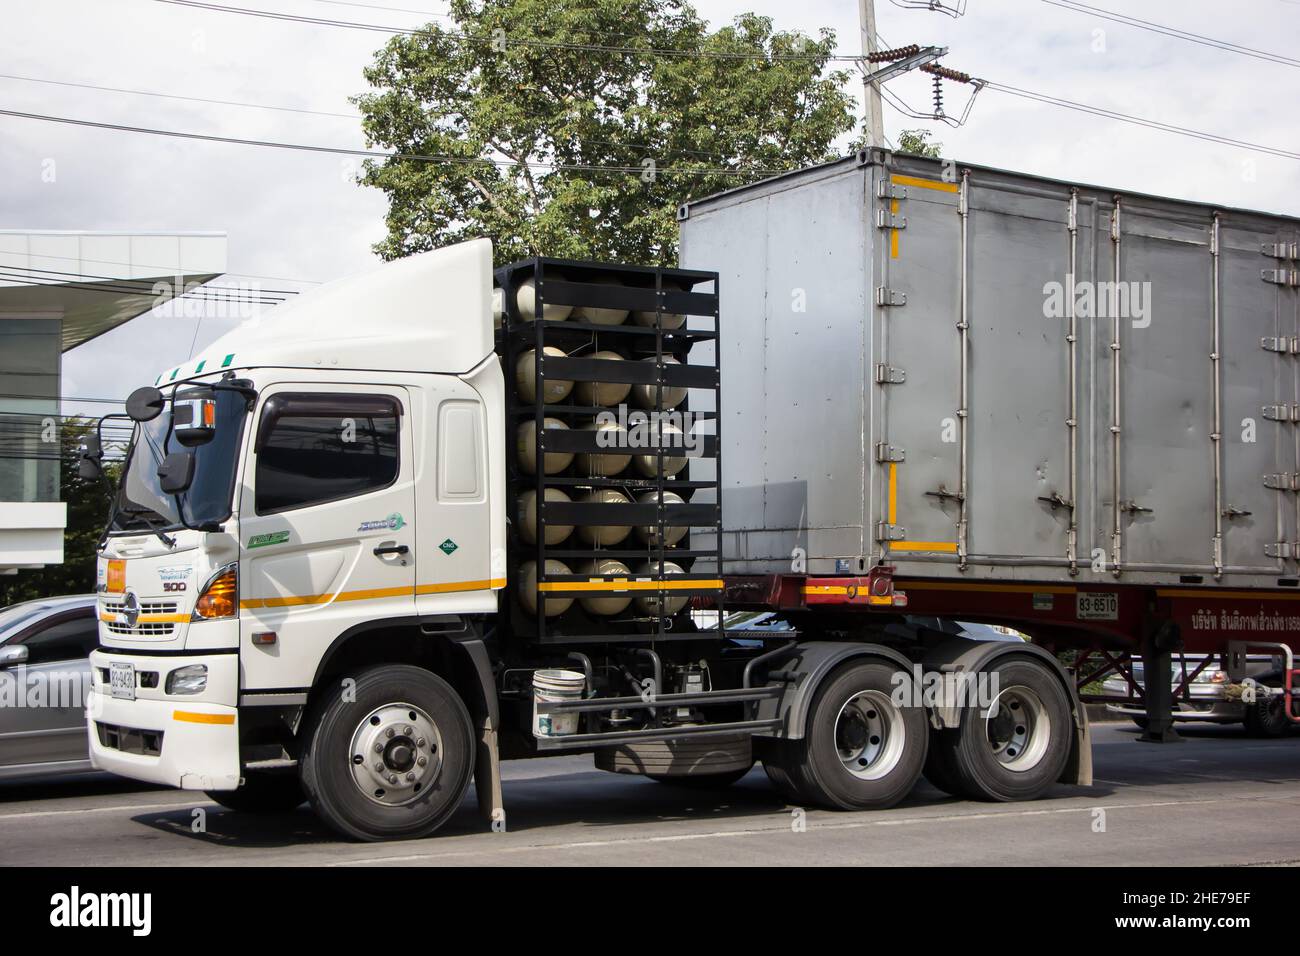 Chiangmai, Thaïlande - novembre 24 2021 : camion-remorque de la compagnie Santipab.Photo sur la route n°1001 à environ 8 km du centre ville, thaïlande Banque D'Images